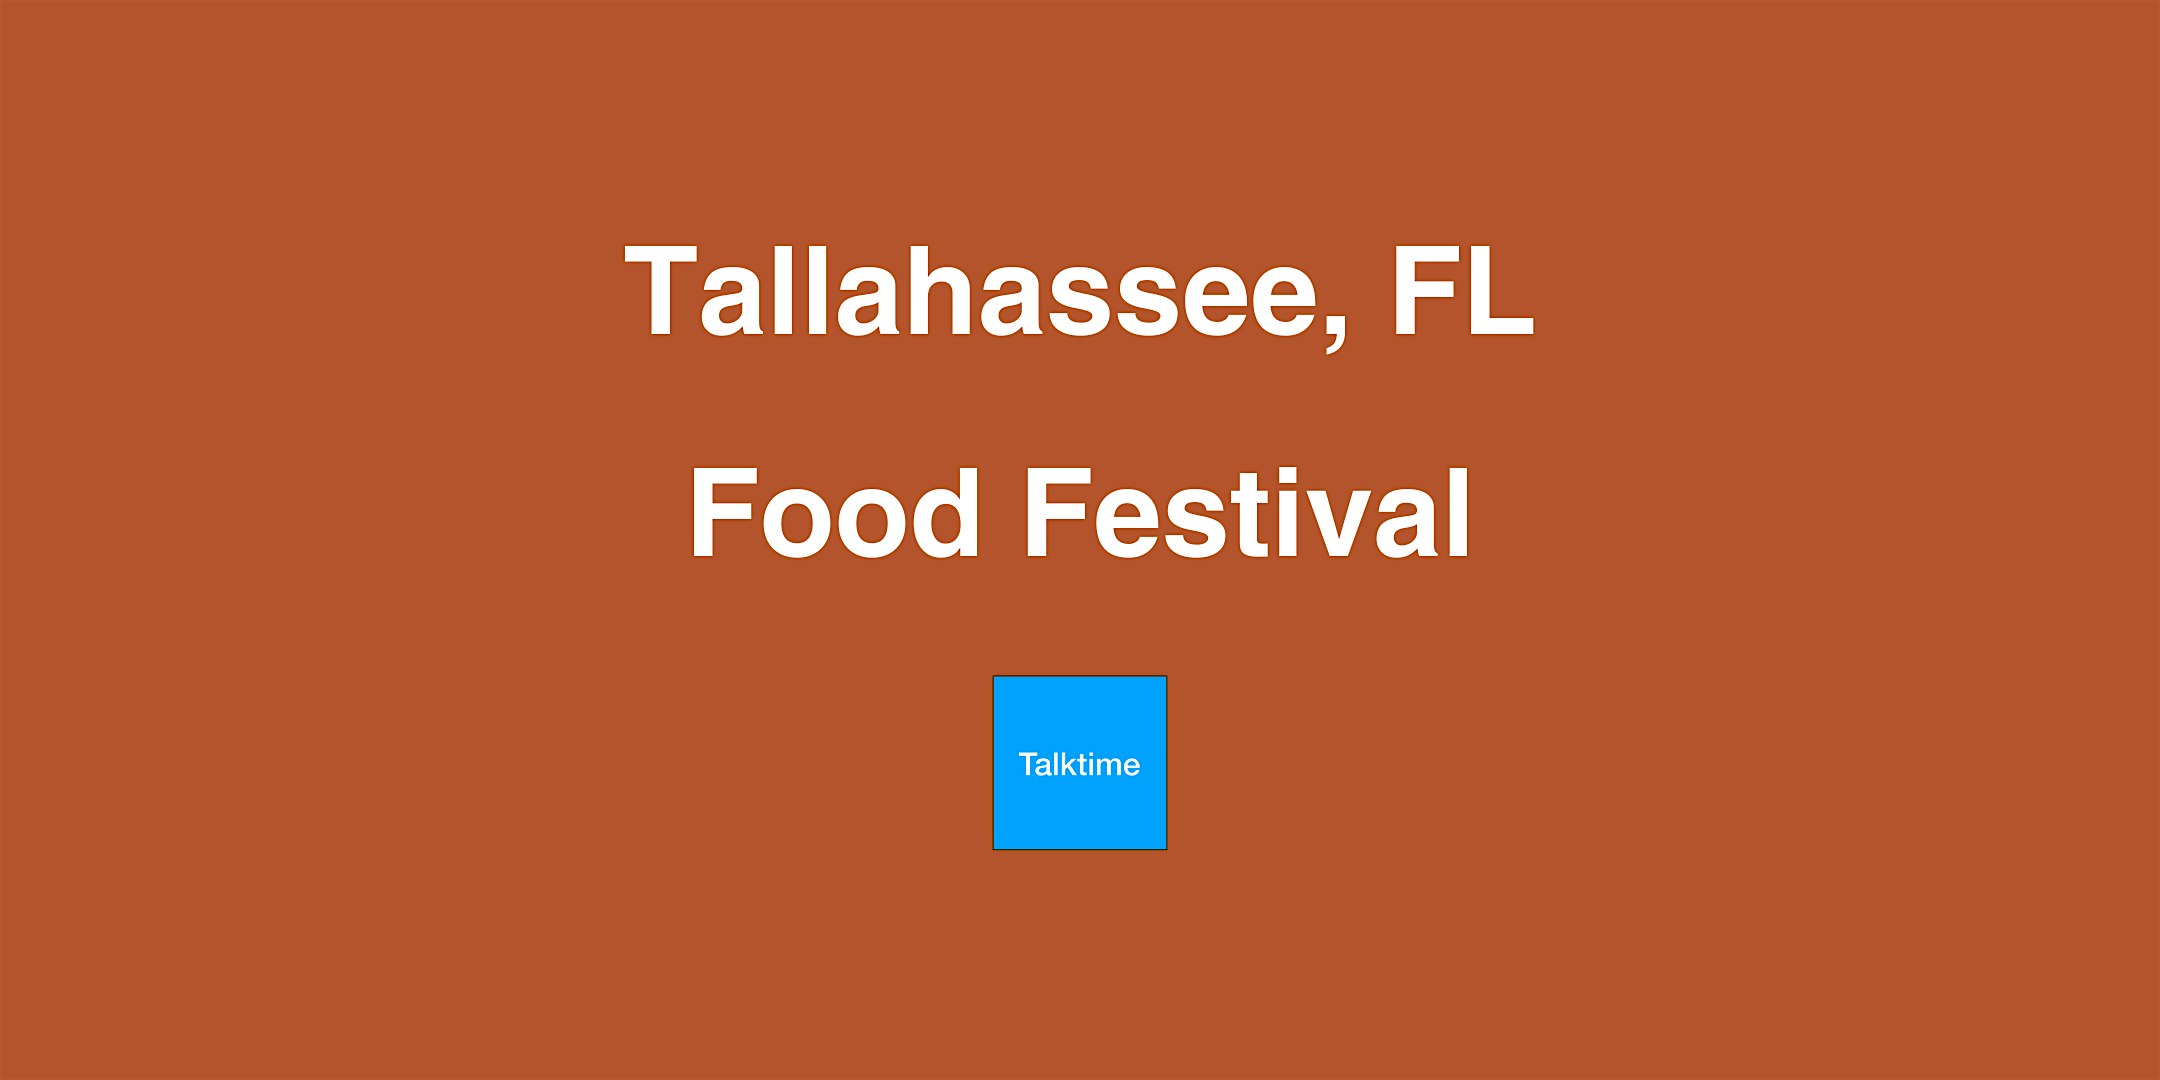 Food Festival - Tallahassee